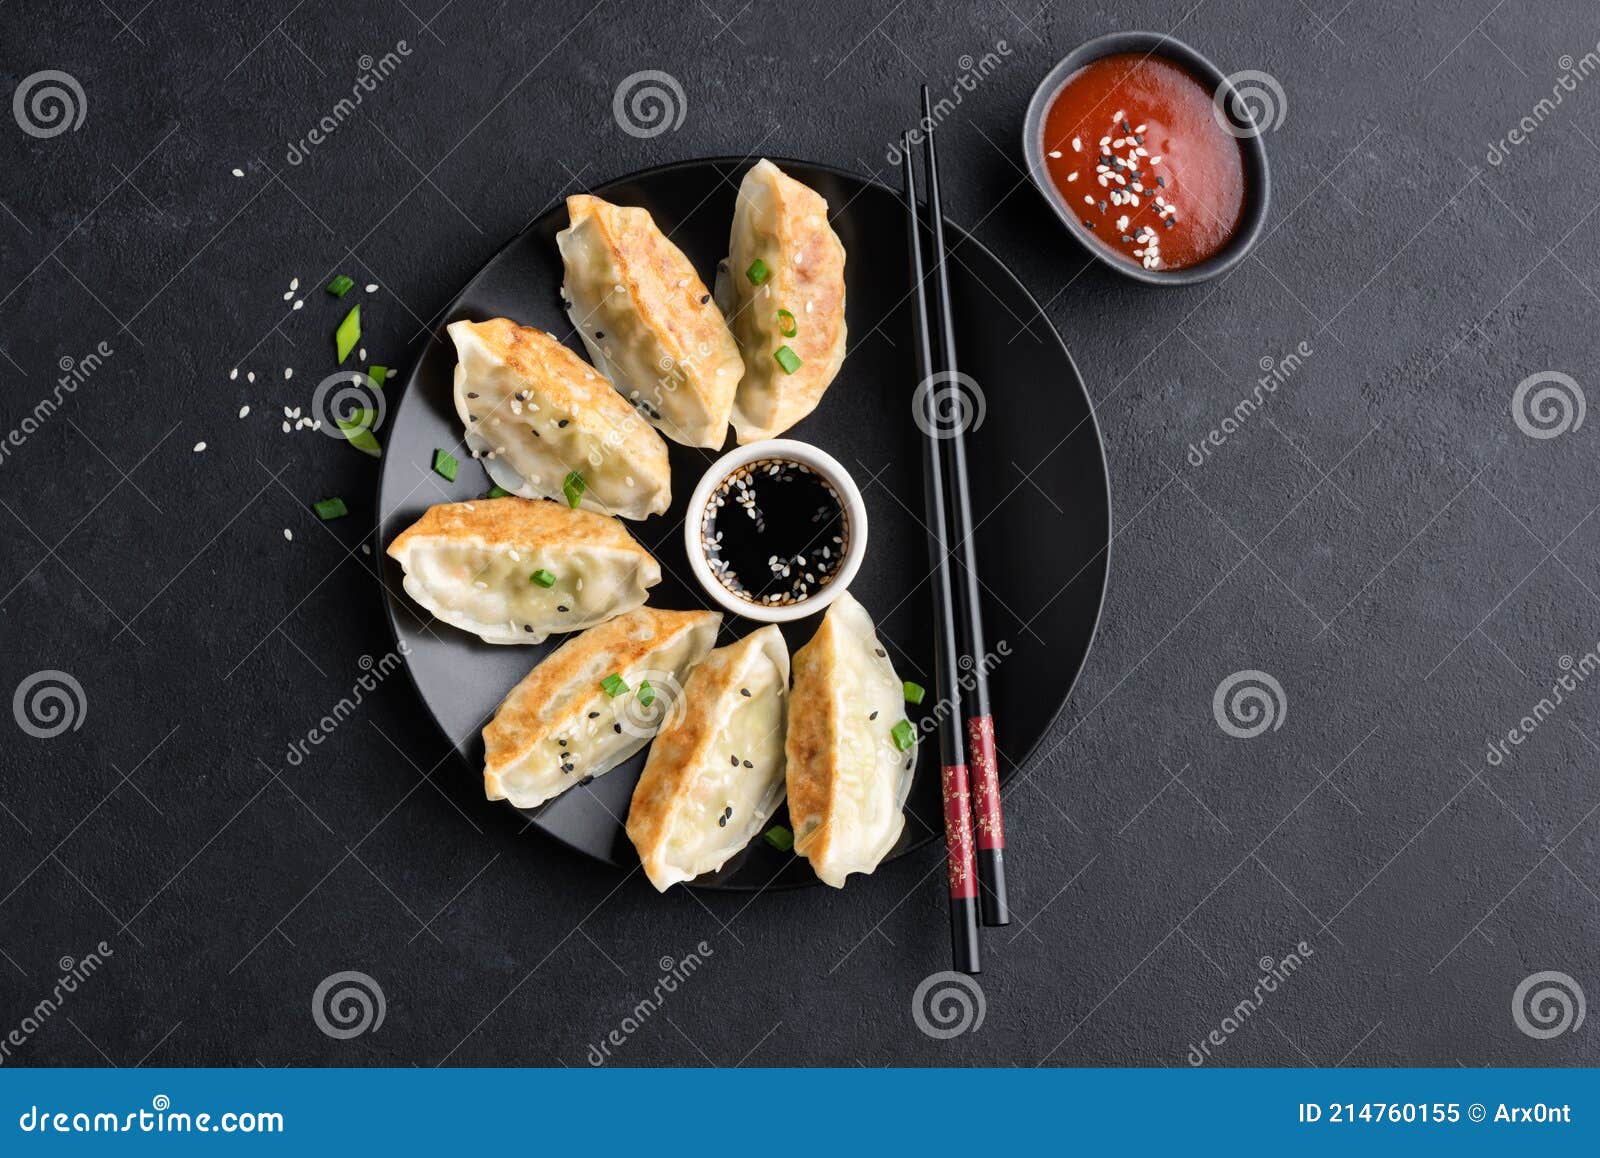 asian food gyoza or jiaozi fried dumplings